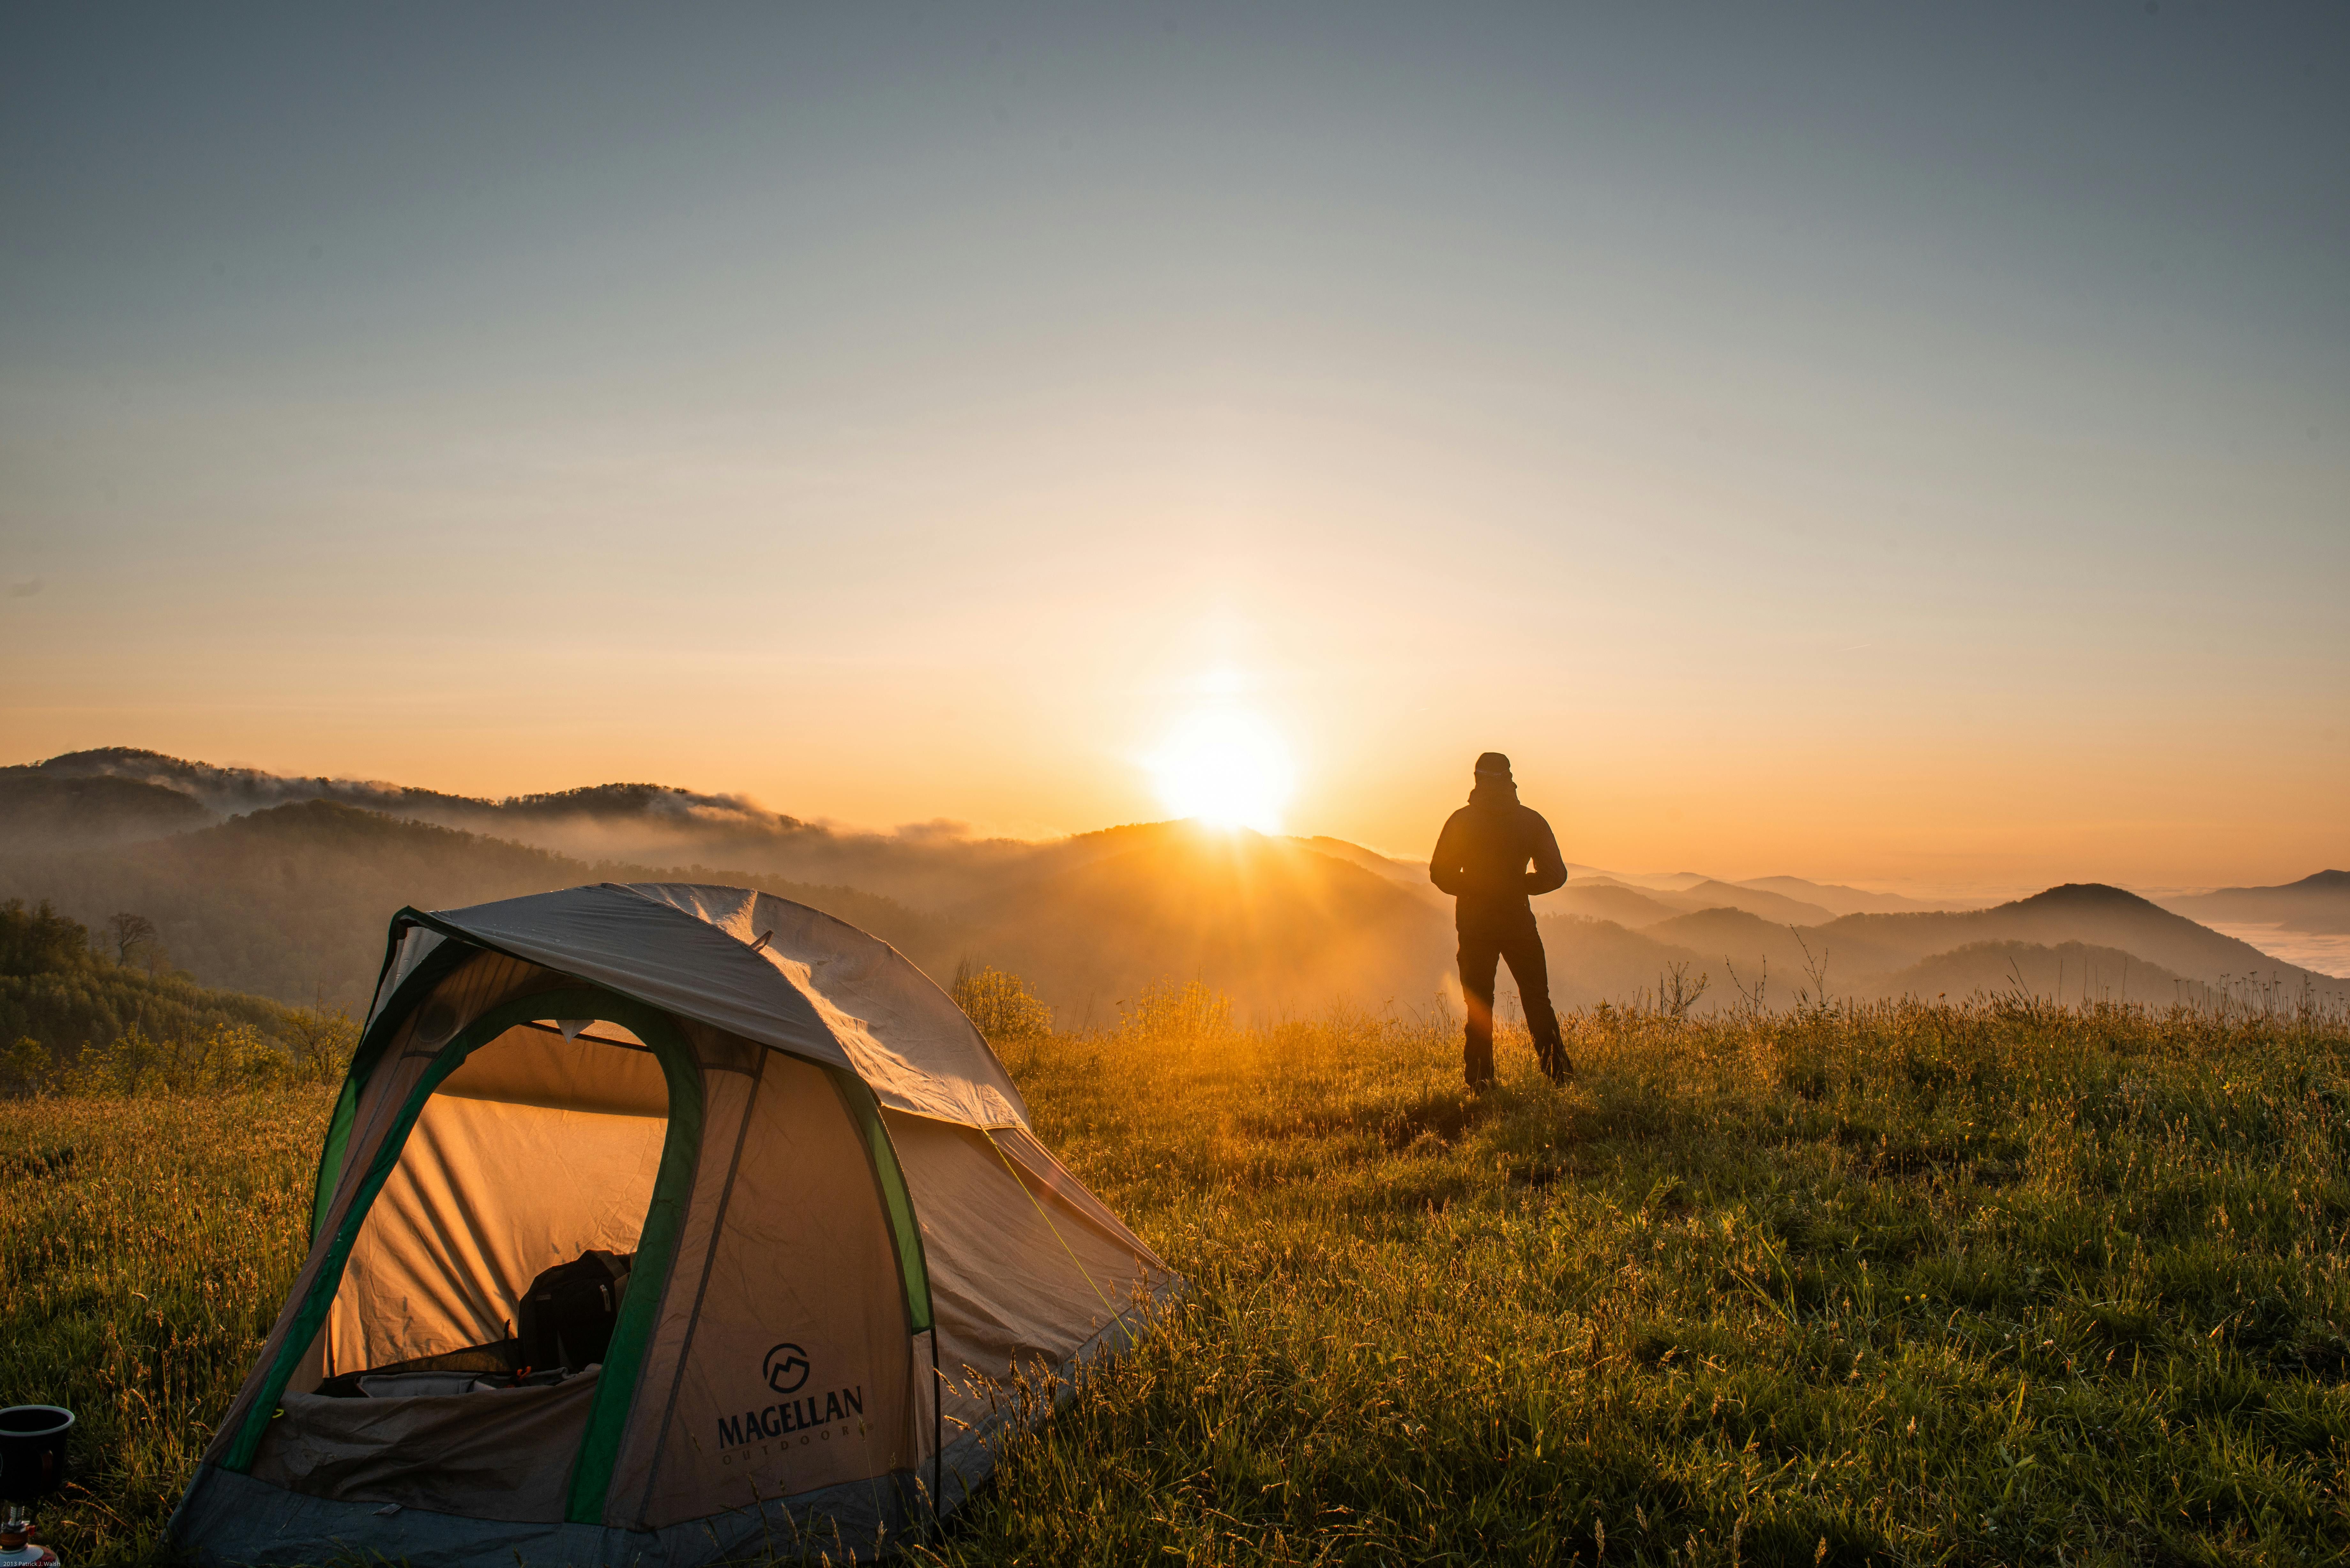 Gratuit Silhouette De Personne Debout Près De La Tente De Camping Photos